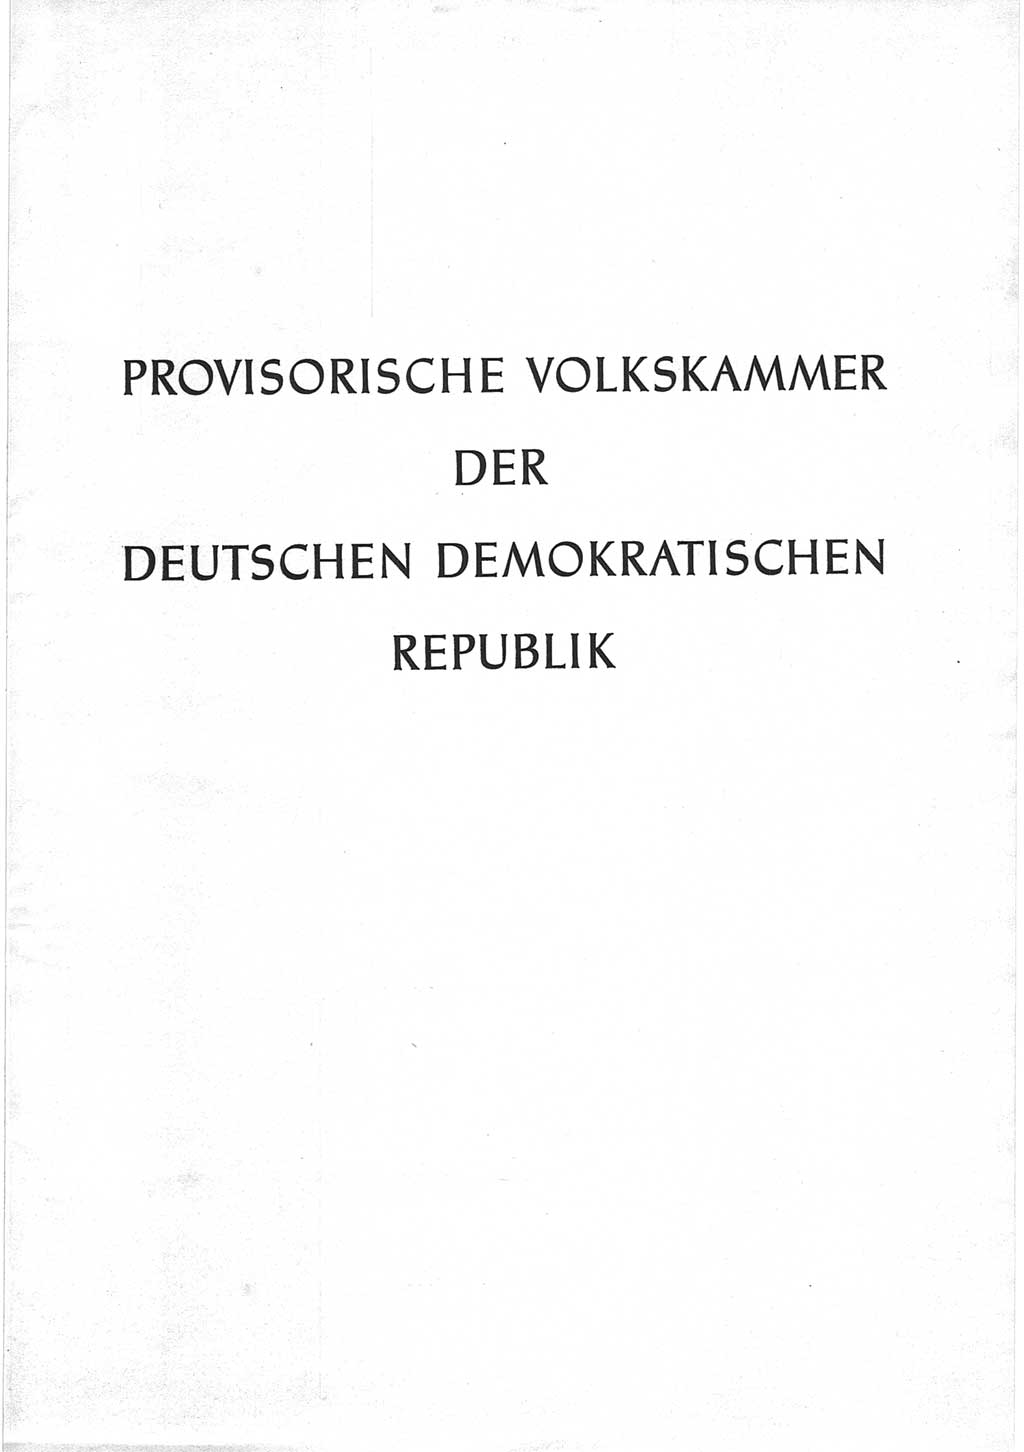 Provisorische Volkskammer (VK) der Deutschen Demokratischen Republik (DDR) 1949-1950, Dokument 1 (Prov. VK DDR 1949-1950, Dok. 1)